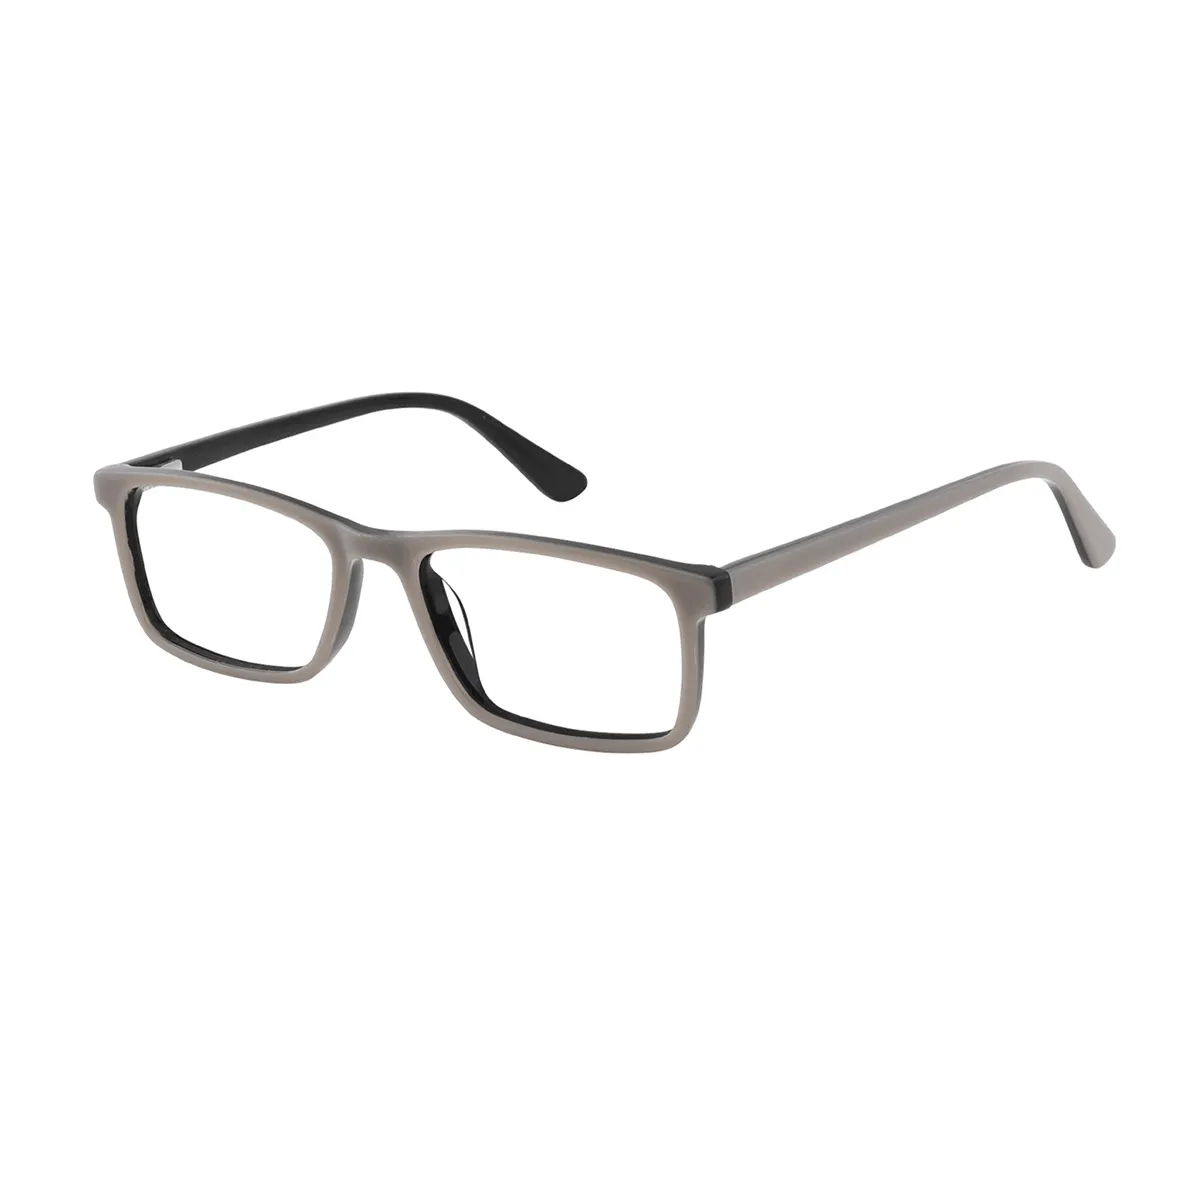 Bassett - Rectangle Gray-black Glasses for Men & Women